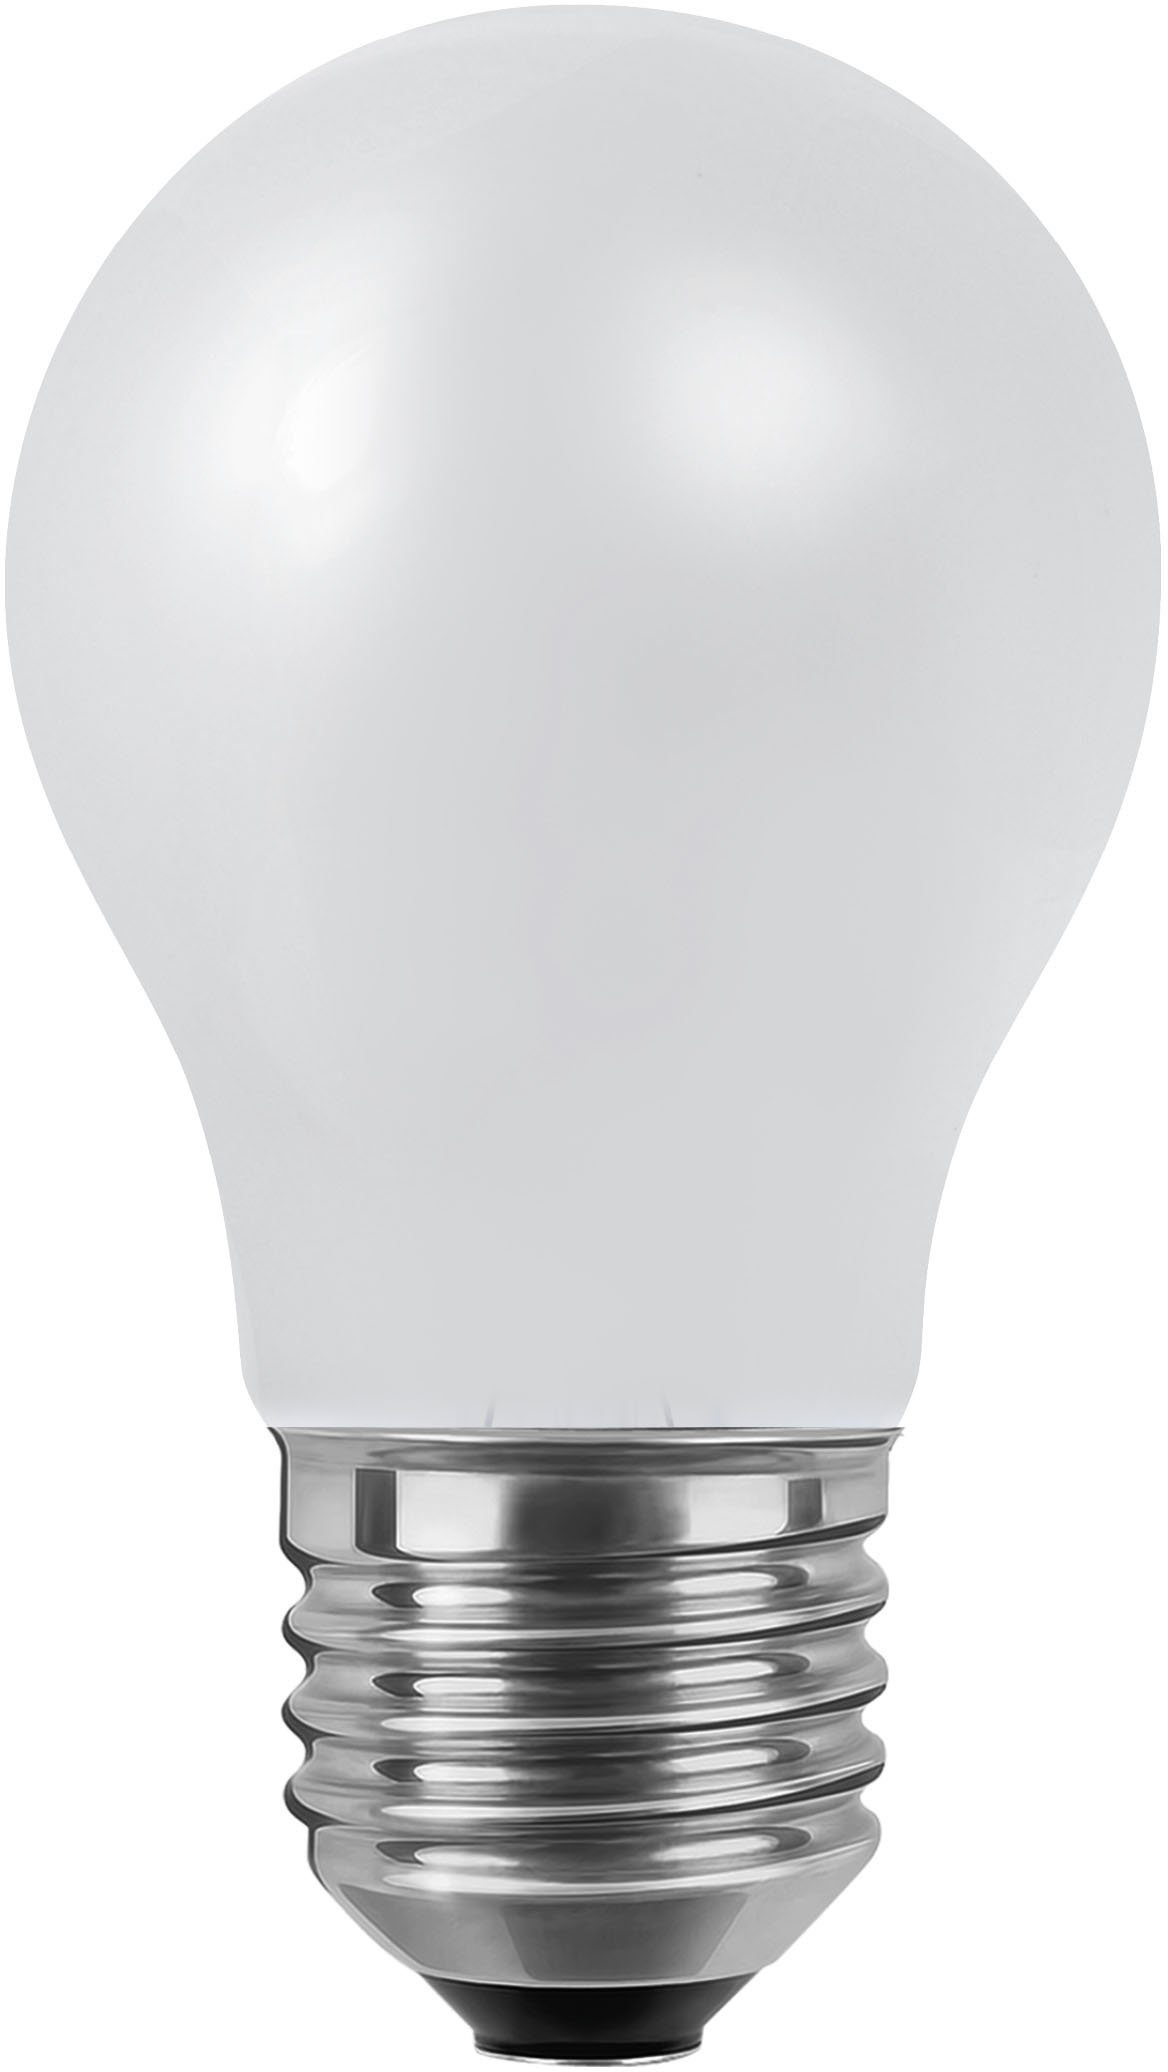 SEGULA LED-Leuchtmittel LED Glühlampe matt, E27, Warmweiß, dimmbar, E27, Glühlampe matt, 2700K, 650Lumen